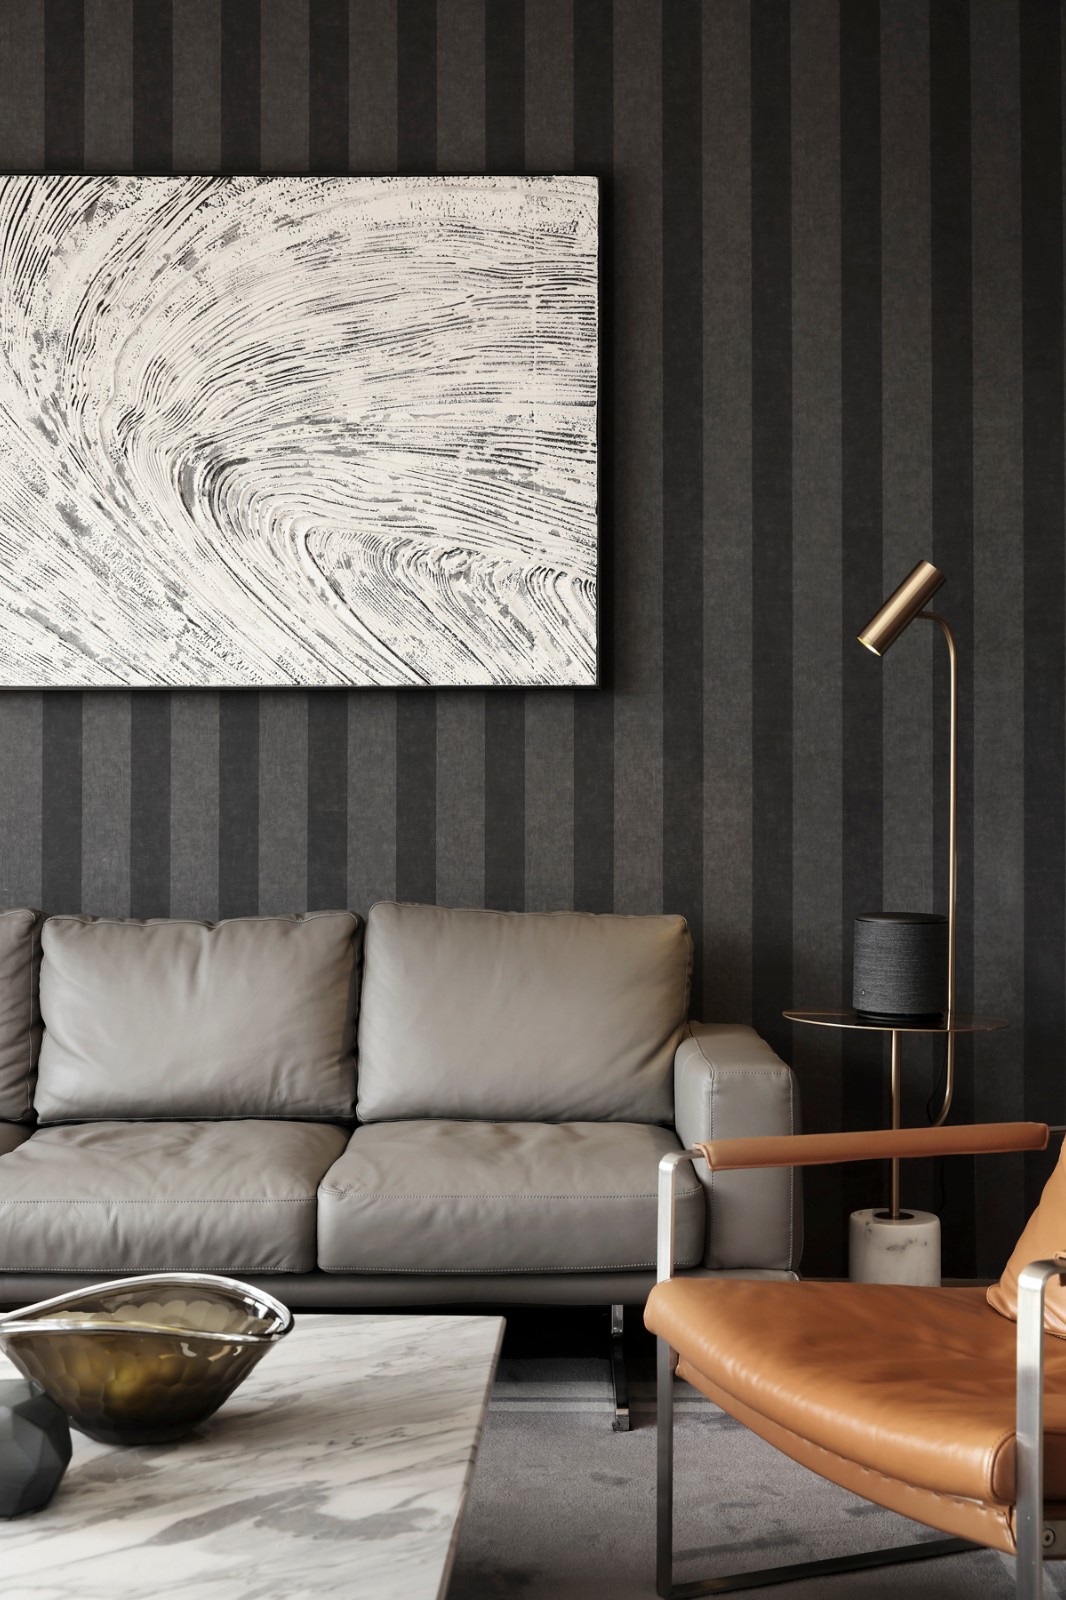 简约现代风格客厅沙发背景墙设计效果图片